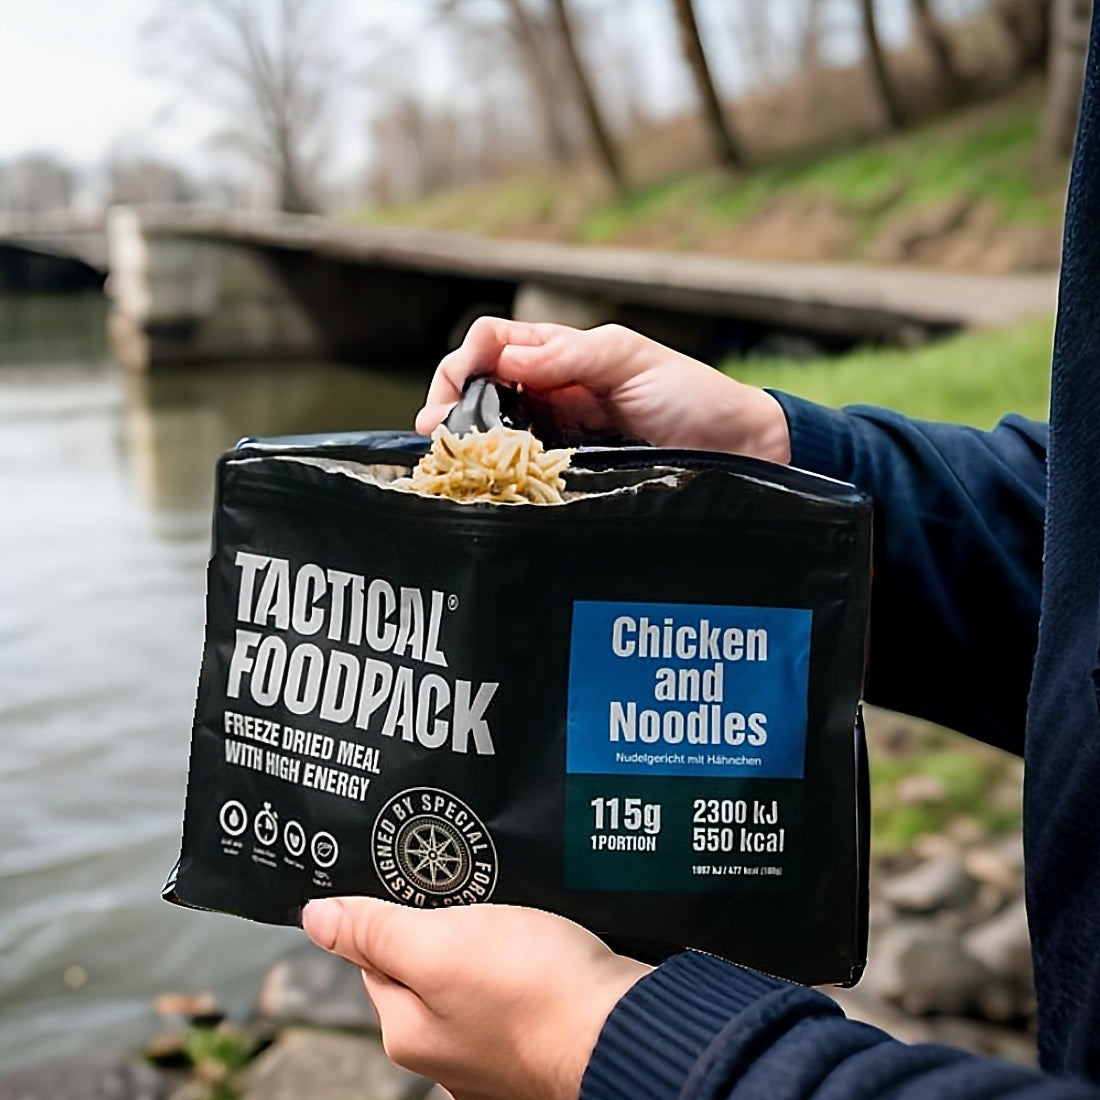 Tactical Foodpack Chicken and Rice - Taktische Notfallnahrung für Spezialkräfte in Krisensituationen